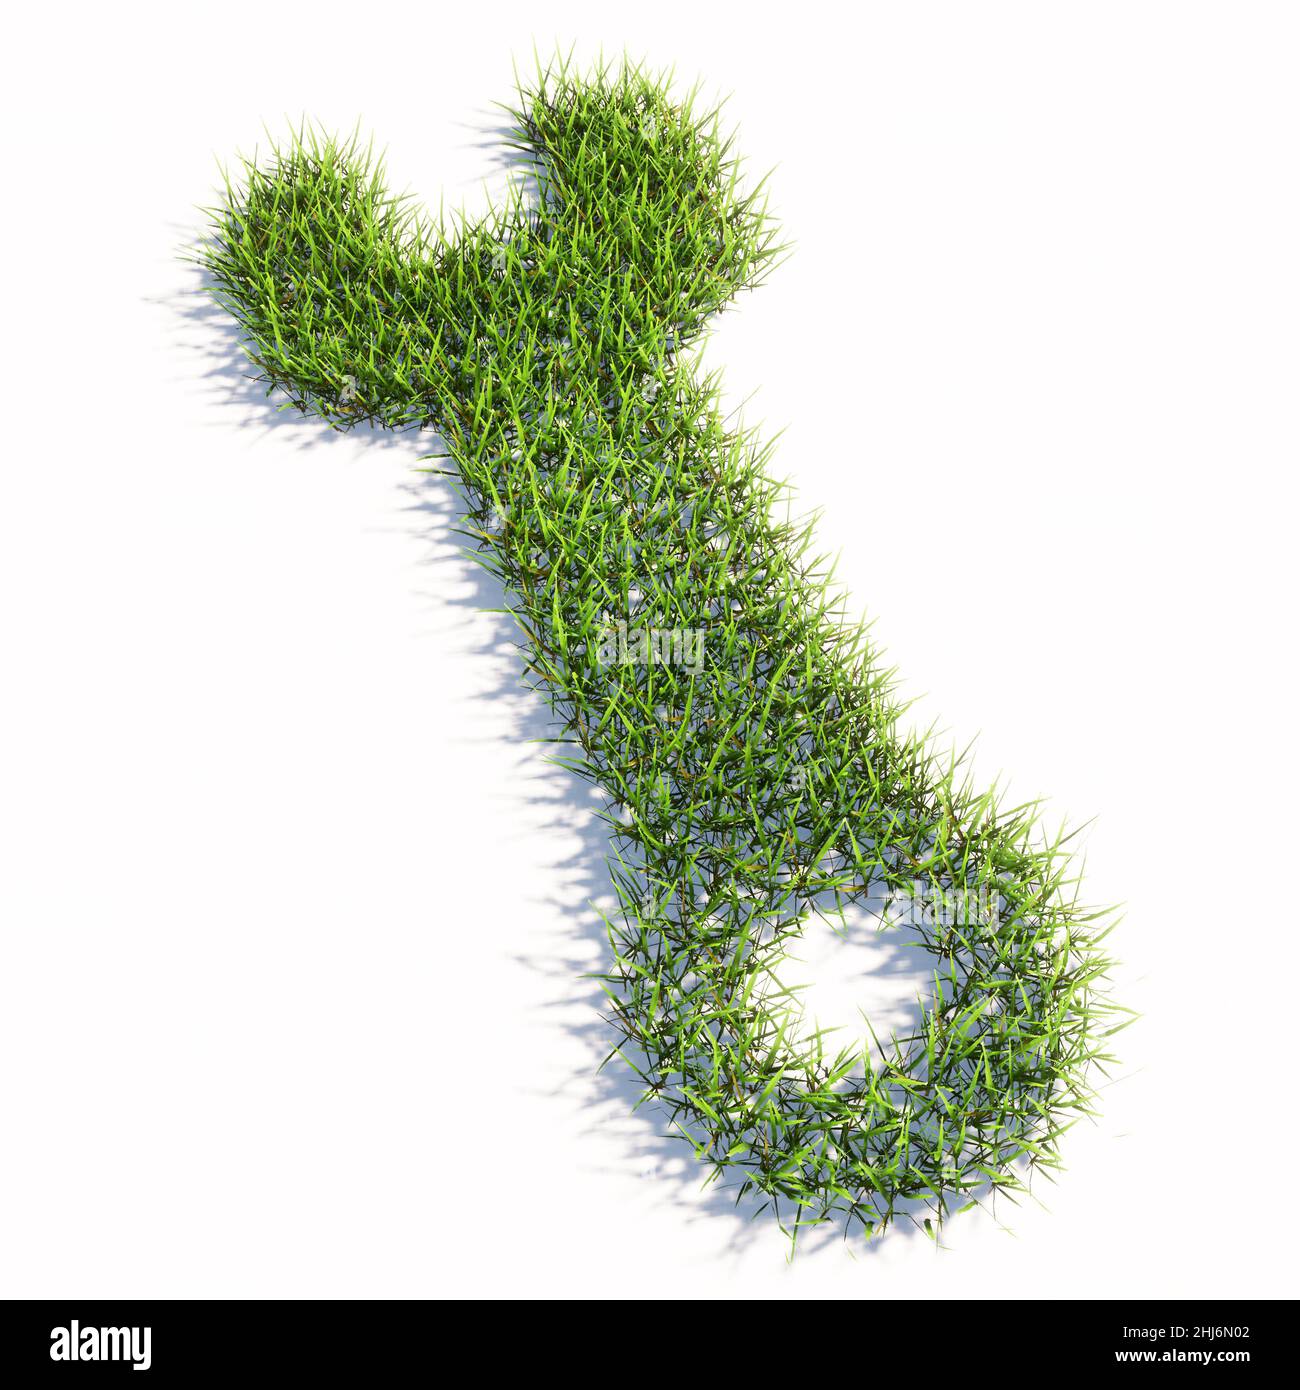 Konzept oder konzeptuelle grüne Sommer Rasen Gras Symbol isoliert weißen Hintergrund, Einstellungen Zeichen. 3d-Illustration Metapher für Verbindung, Engineering Stockfoto